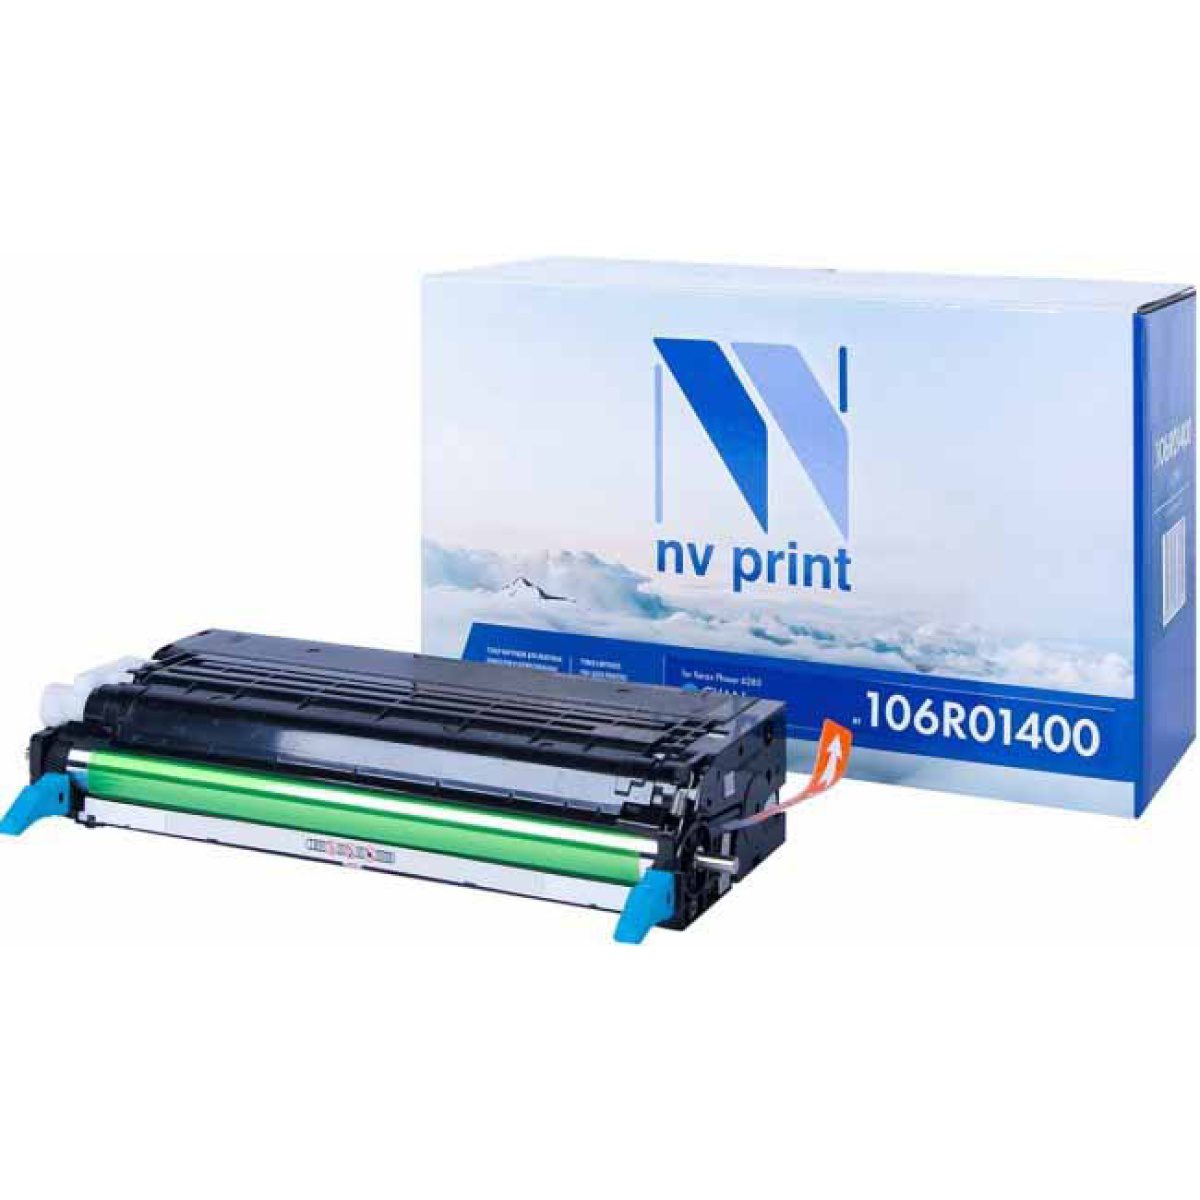 Купить картридж NV Print 106R01400 синий по адекватной цене — Digit-Mall